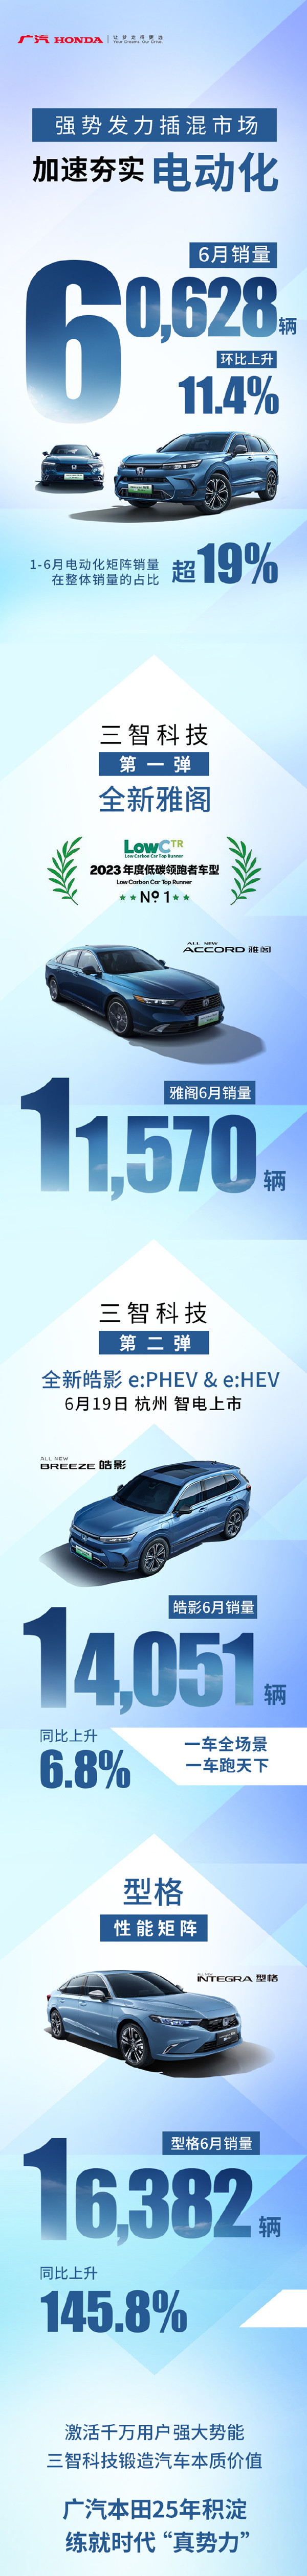 广汽本田公布6月销量 60628辆环比上升11.4%